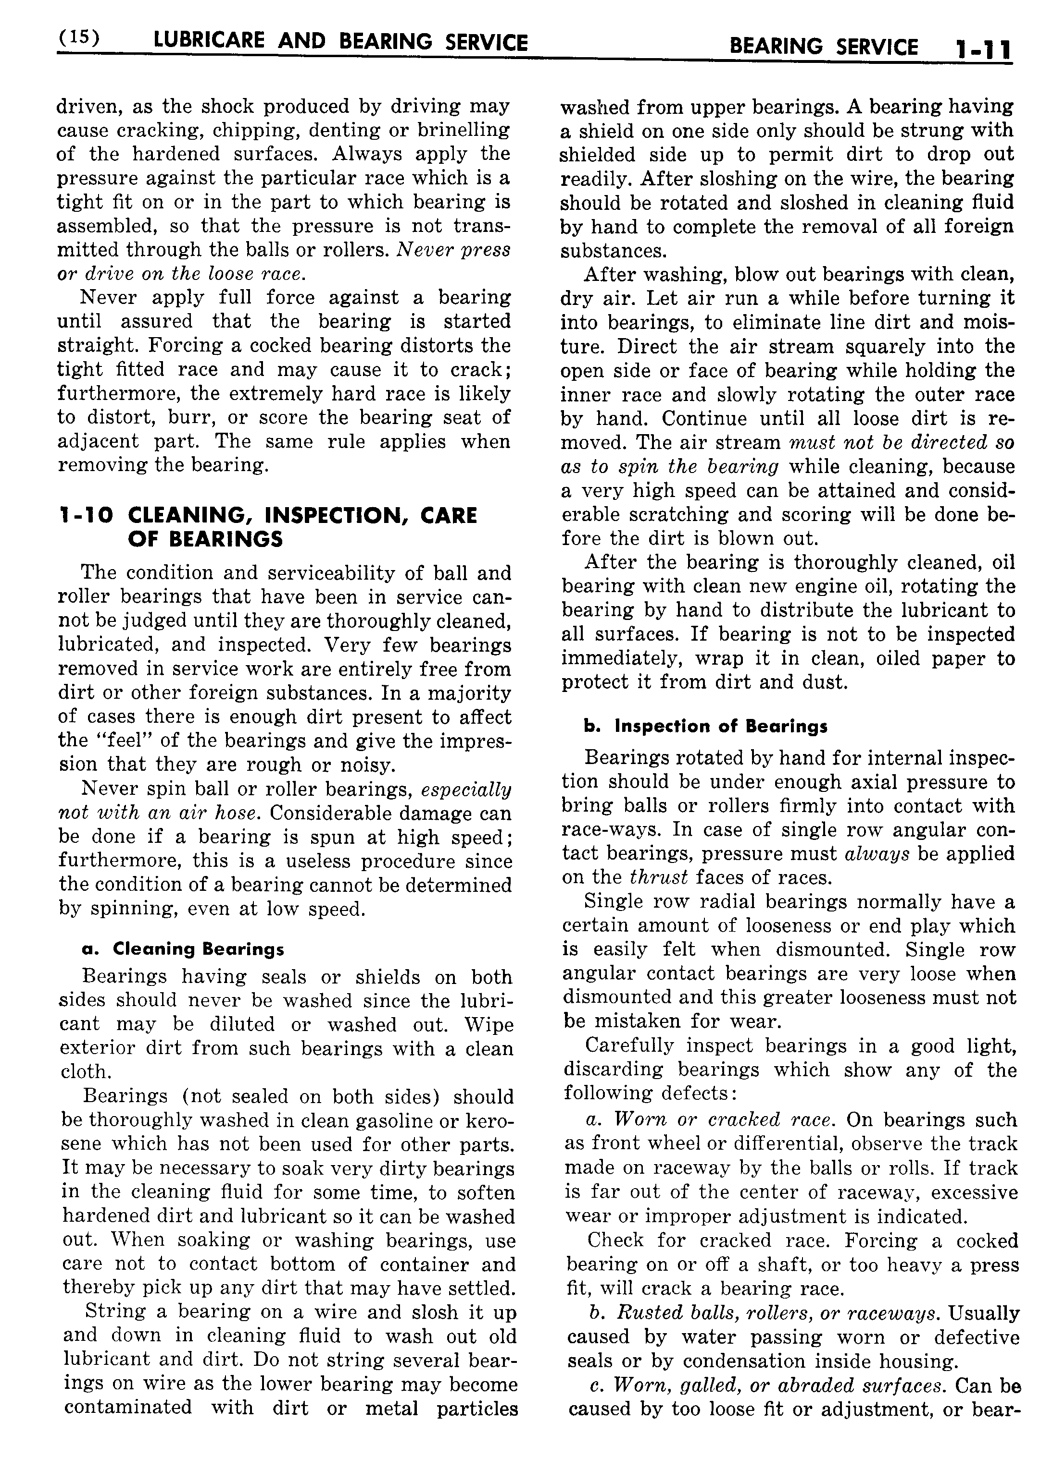 n_02 1956 Buick Shop Manual - Lubricare-011-011.jpg